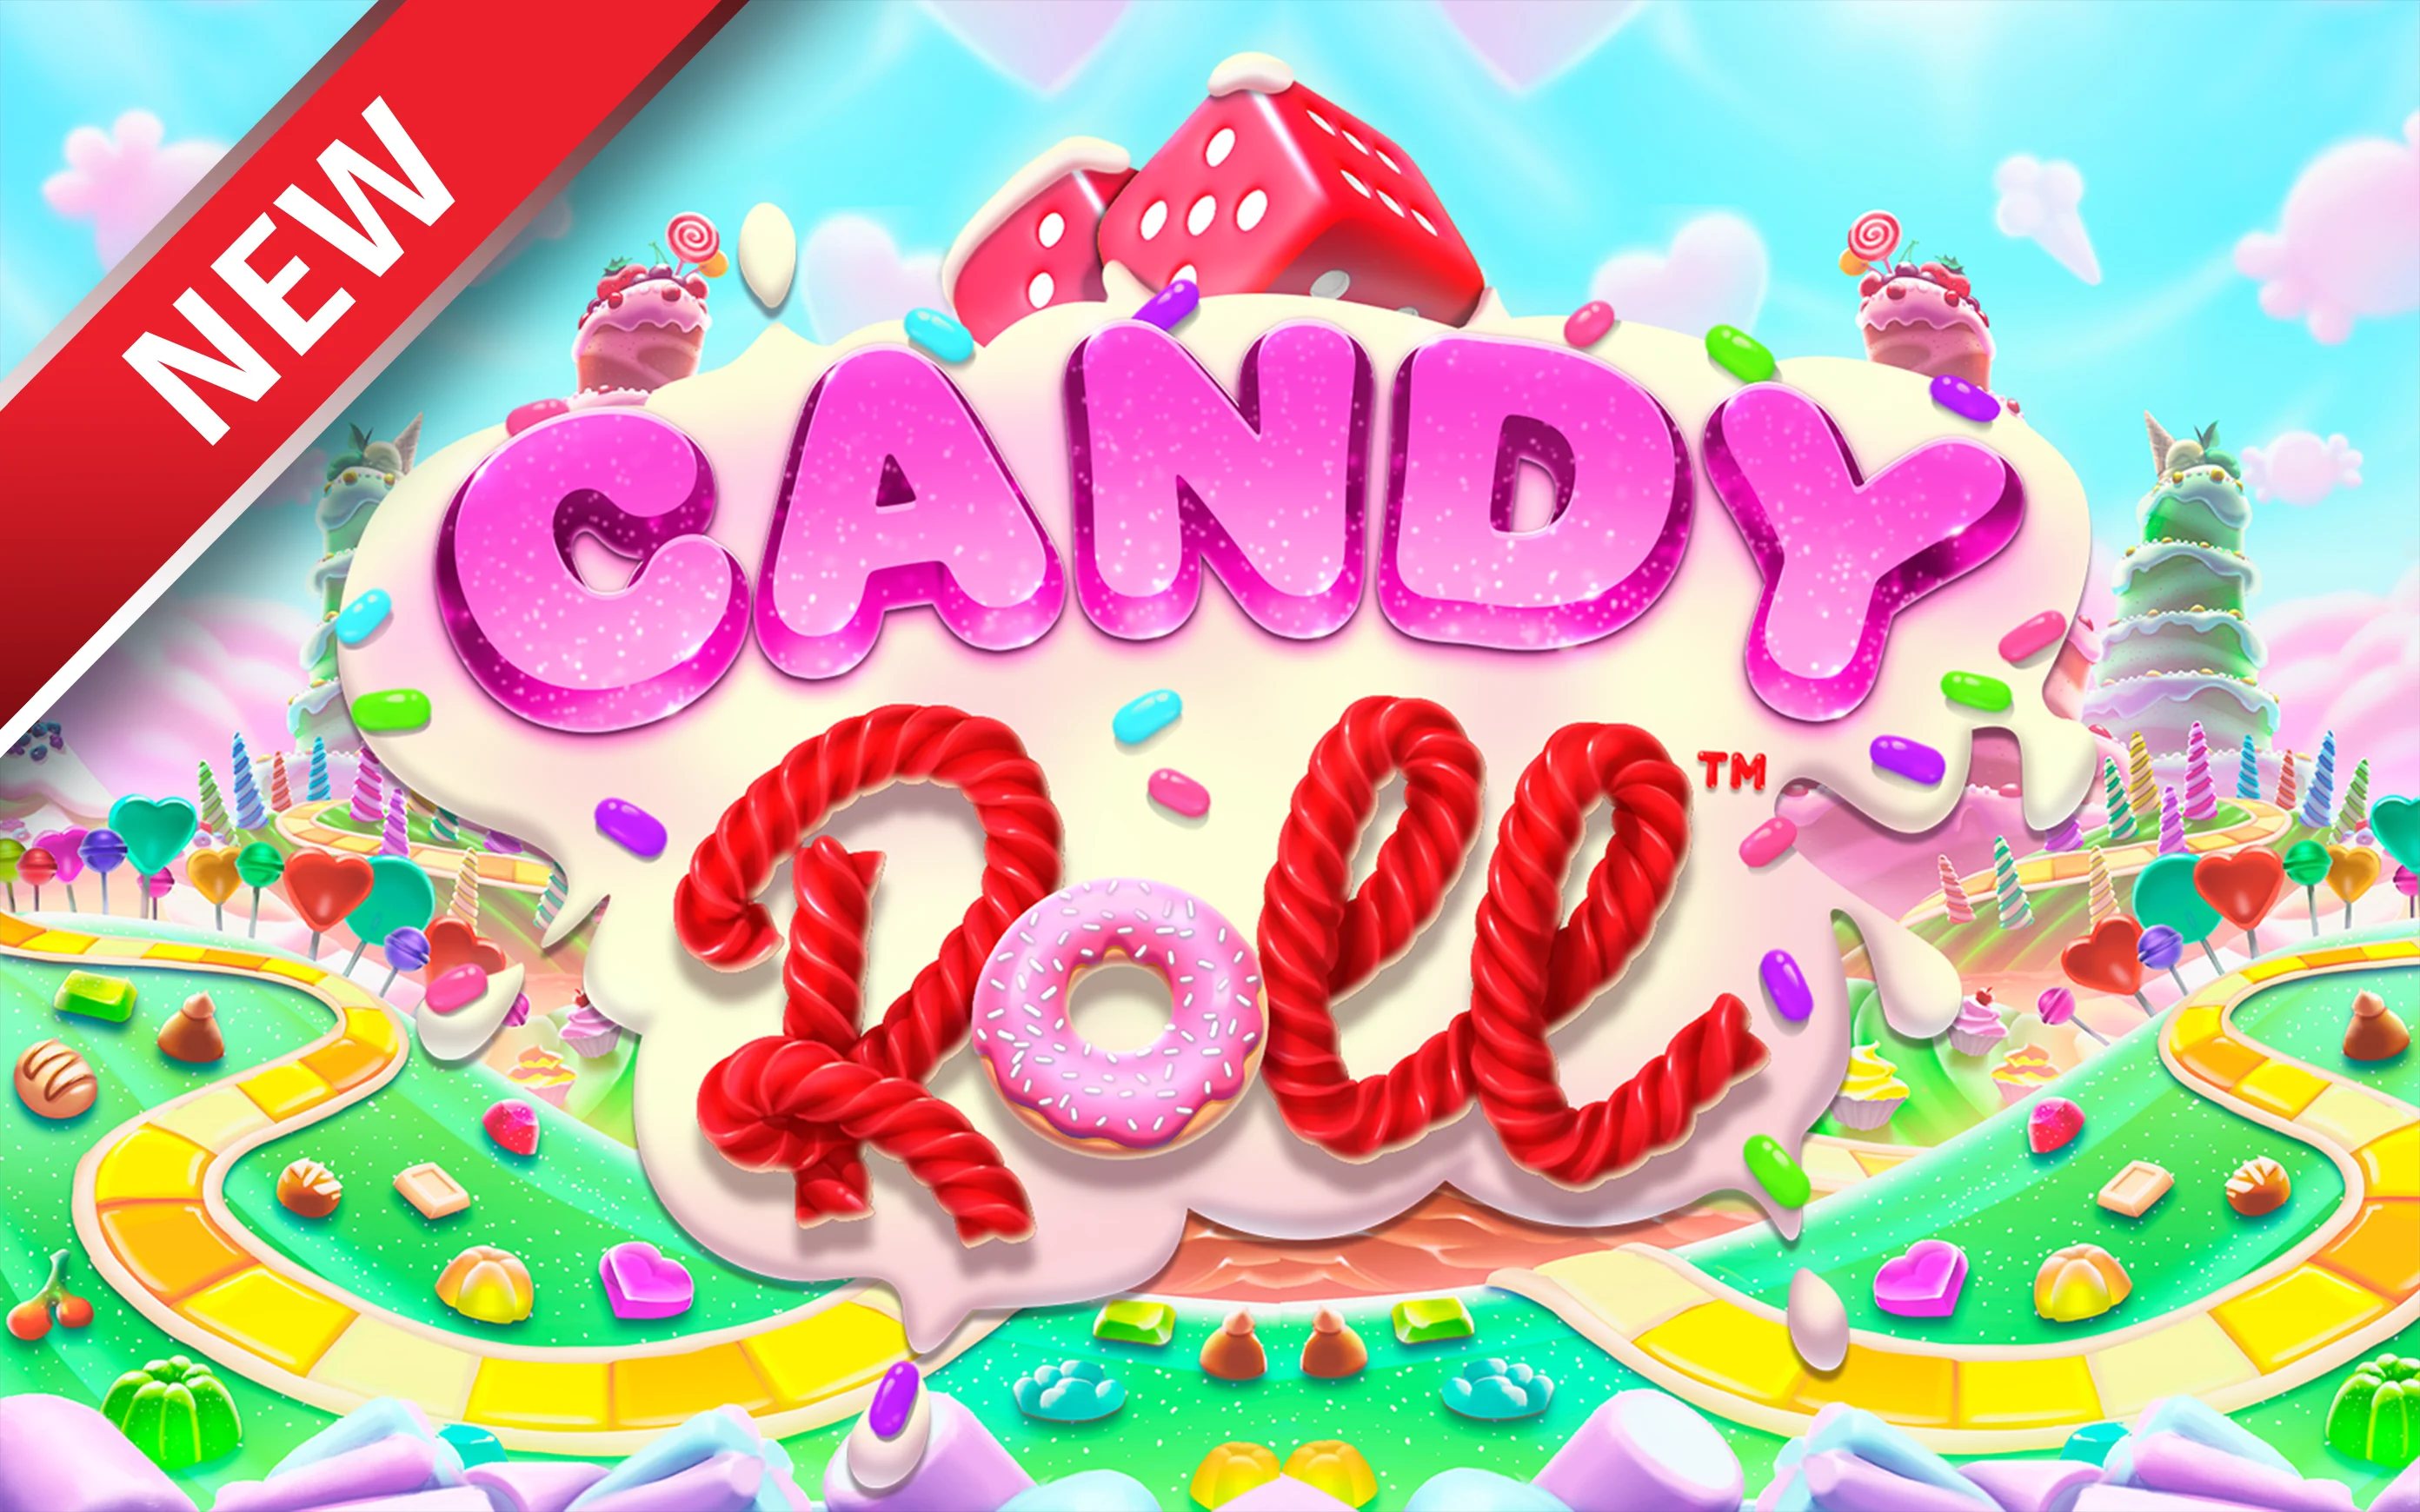 Gioca a Candy Roll™ sul casino online Starcasino.be